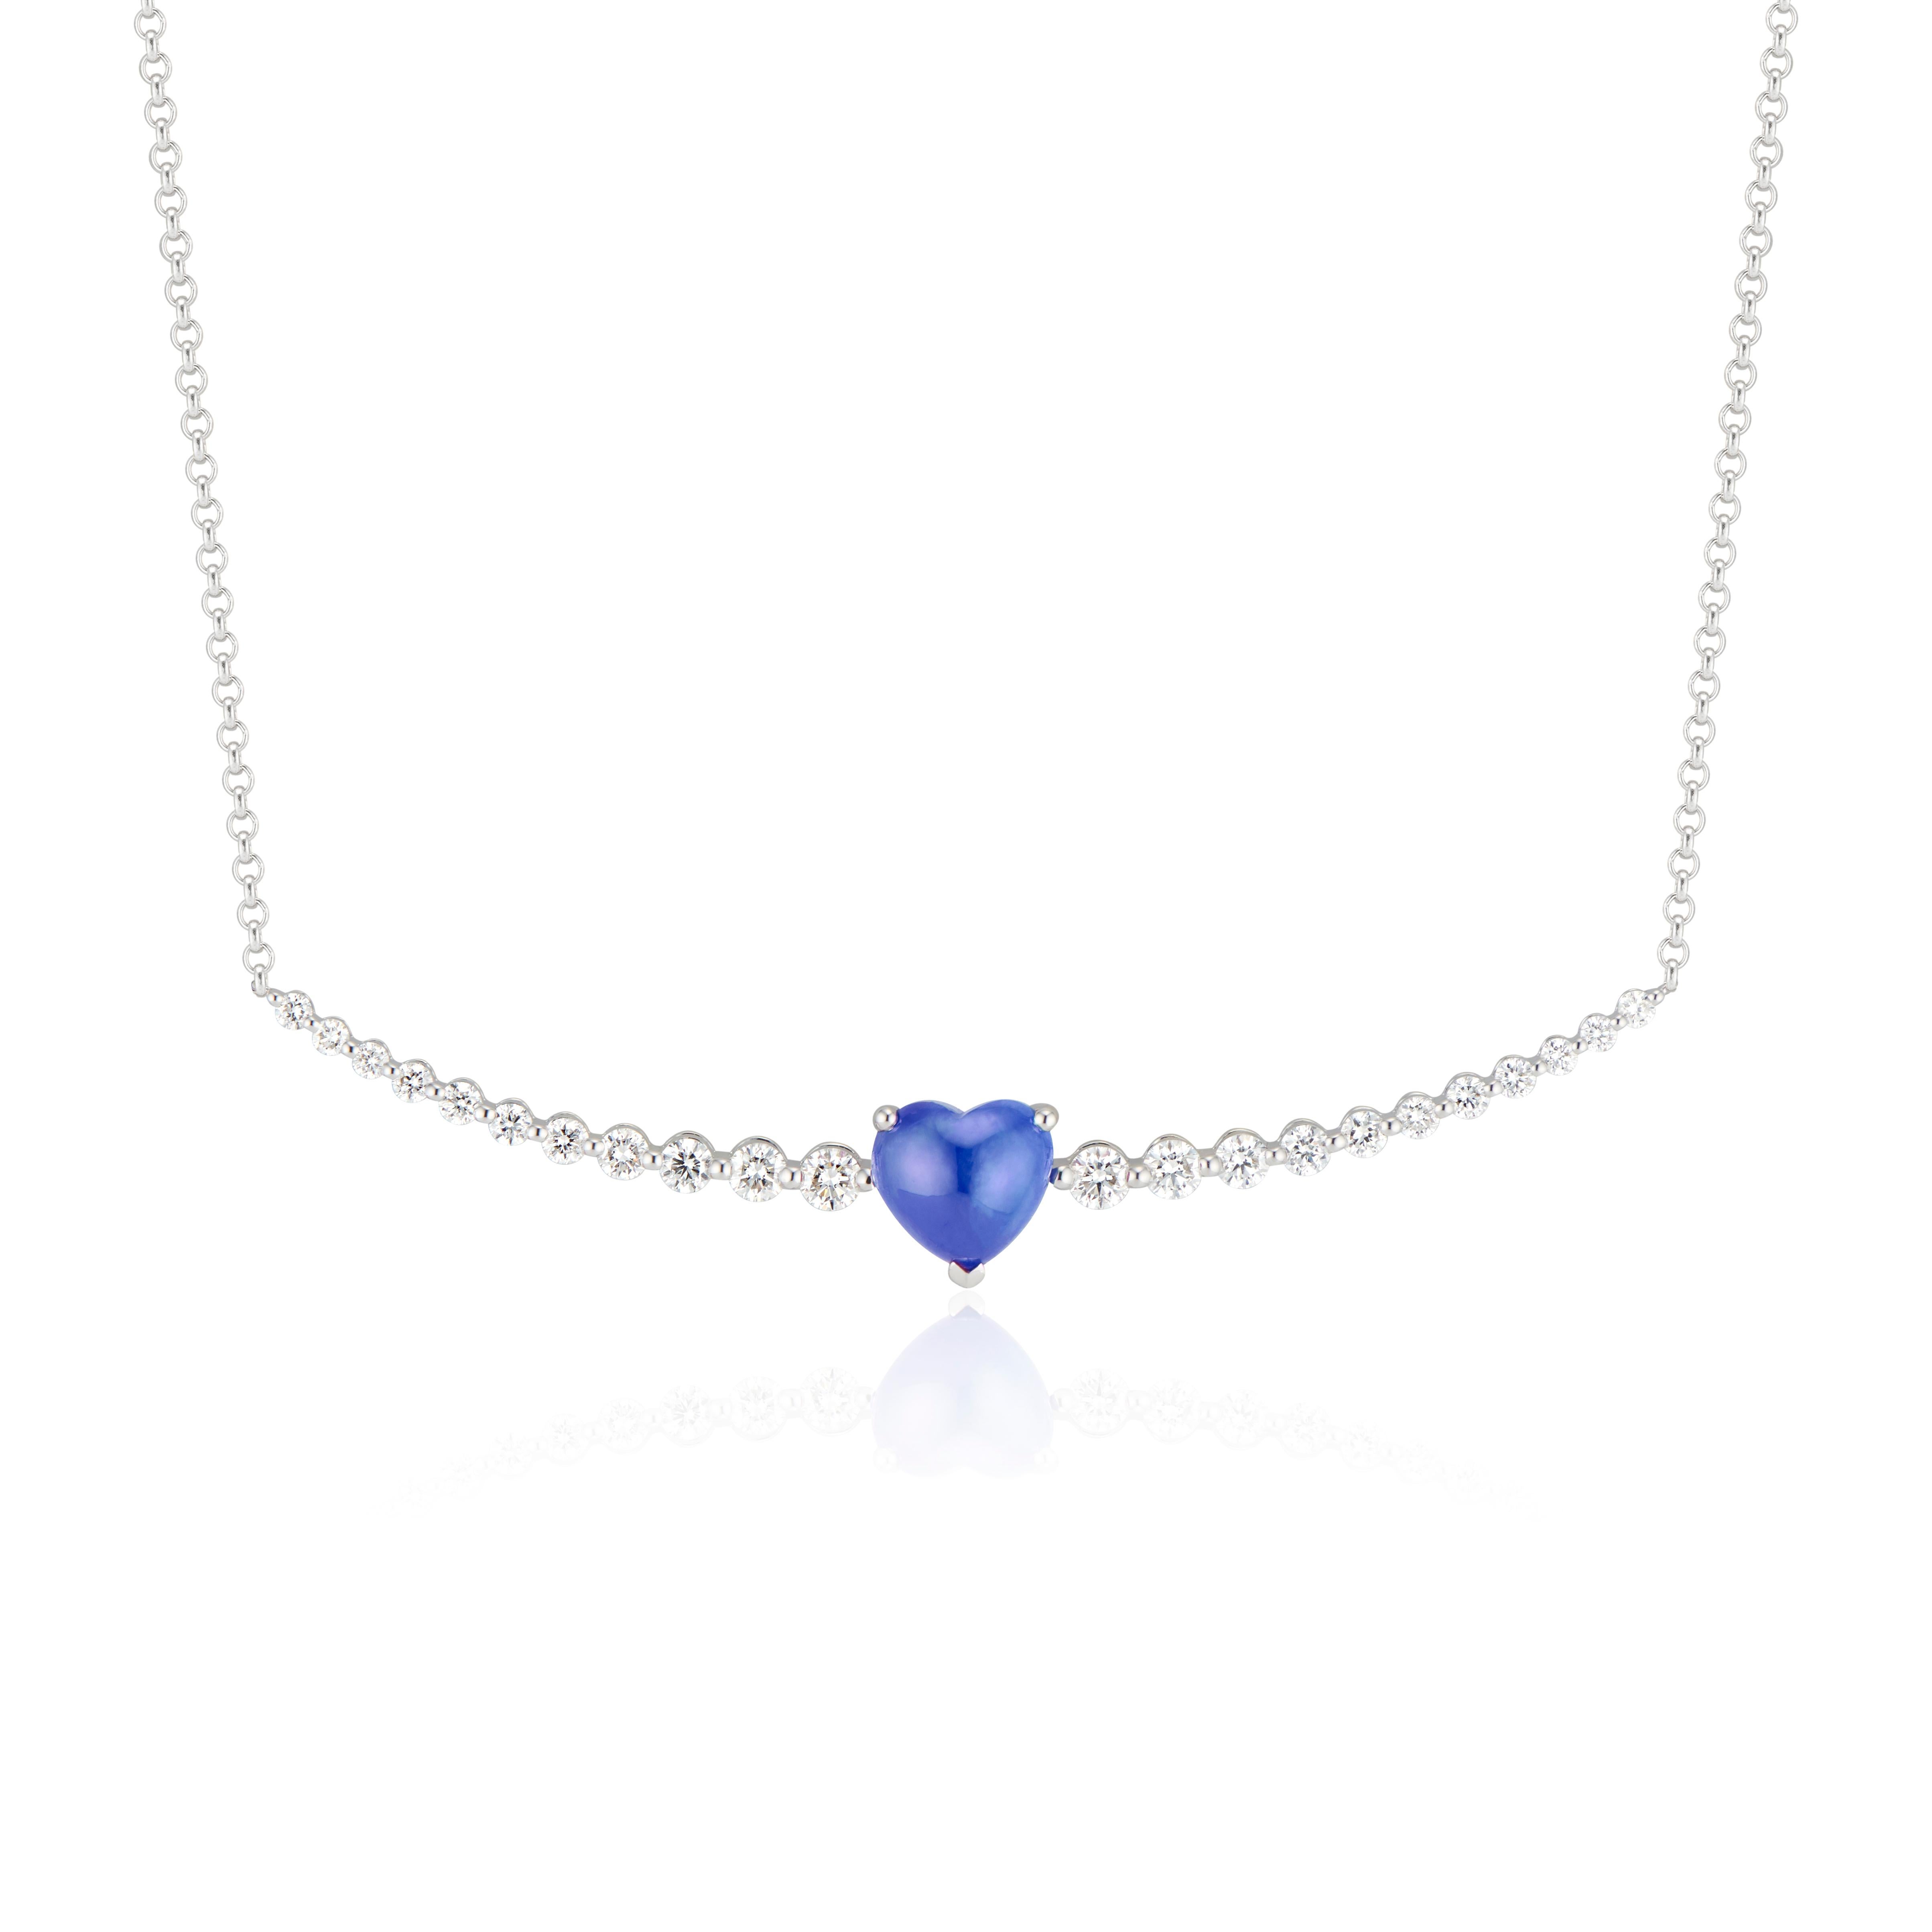 Soulignant la beauté des pierres naturelles, la bague à saphir flottant et diamant de Ri Noor attire l'attention sur les teintes bleues saturées et spectaculaires du saphir en forme de cœur. Sertie en or blanc 18 carats avec des diamants